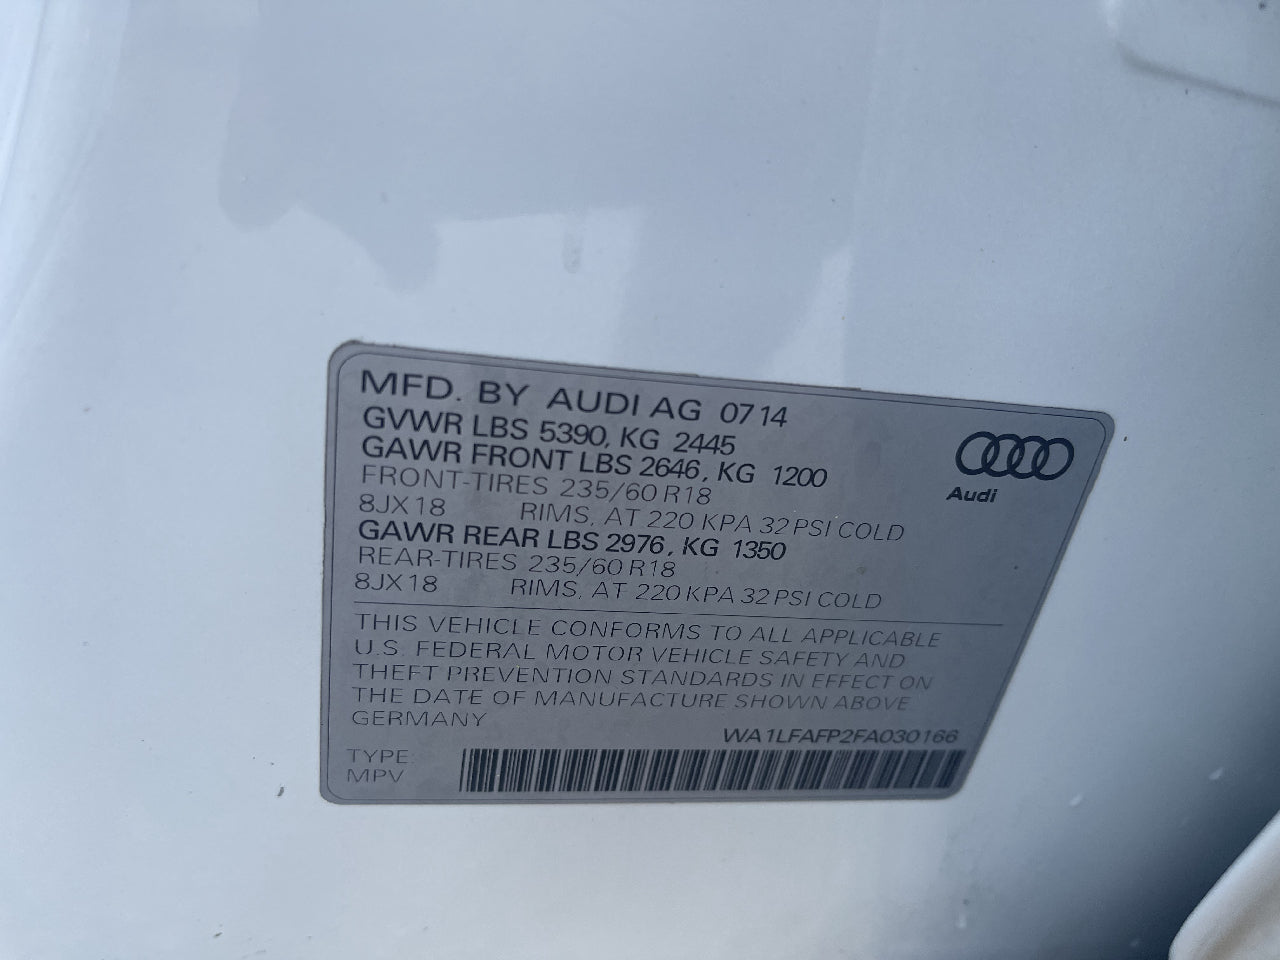 2015 Audi Q5 2.0T Premium Plus quattro $999 DOWN & DRIVE IN 1 HOUR!